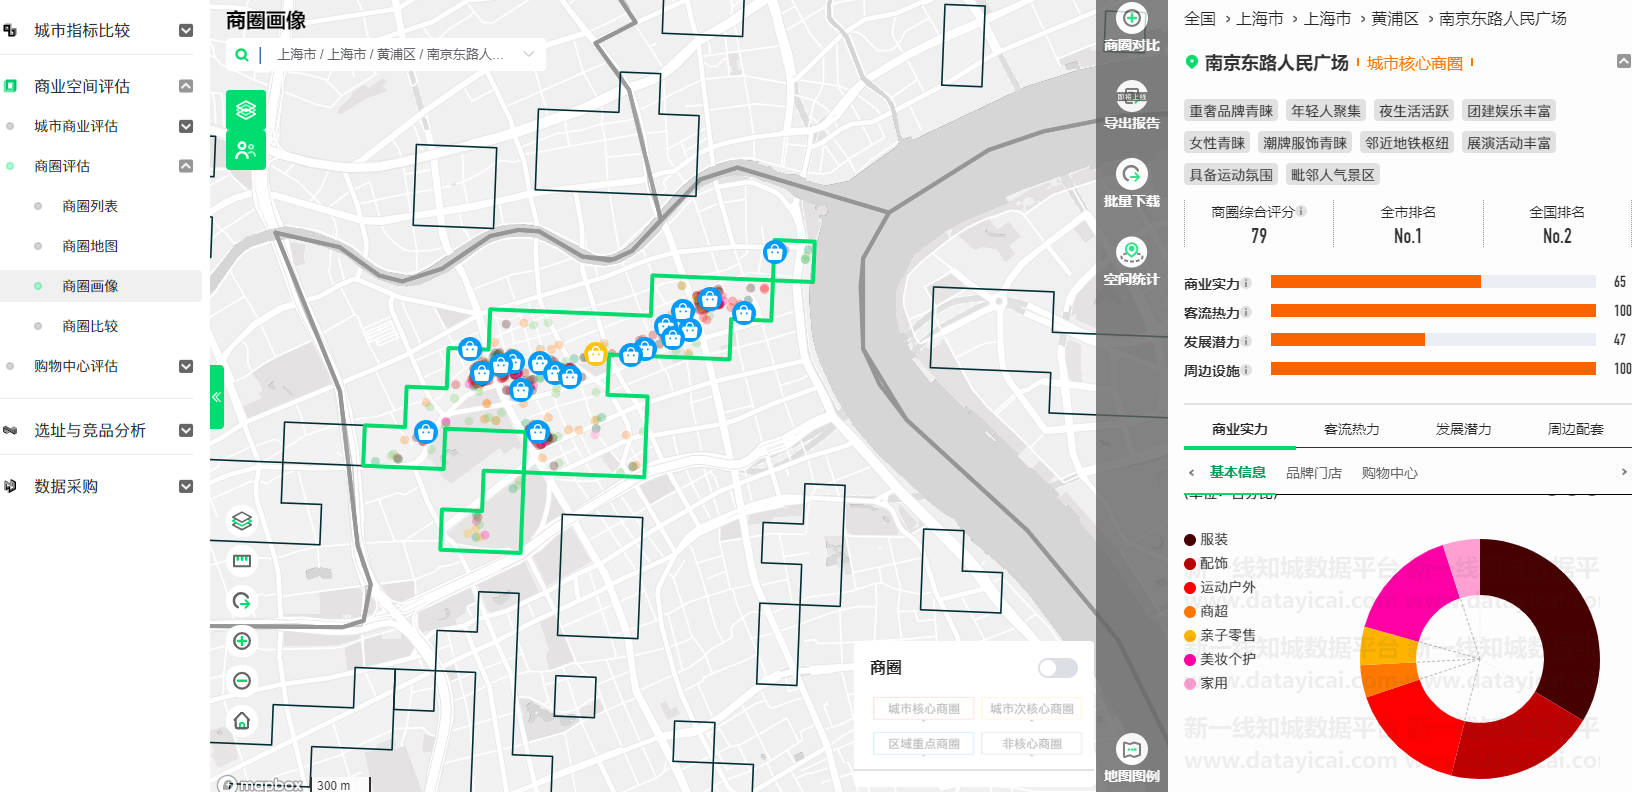 城市数据平台